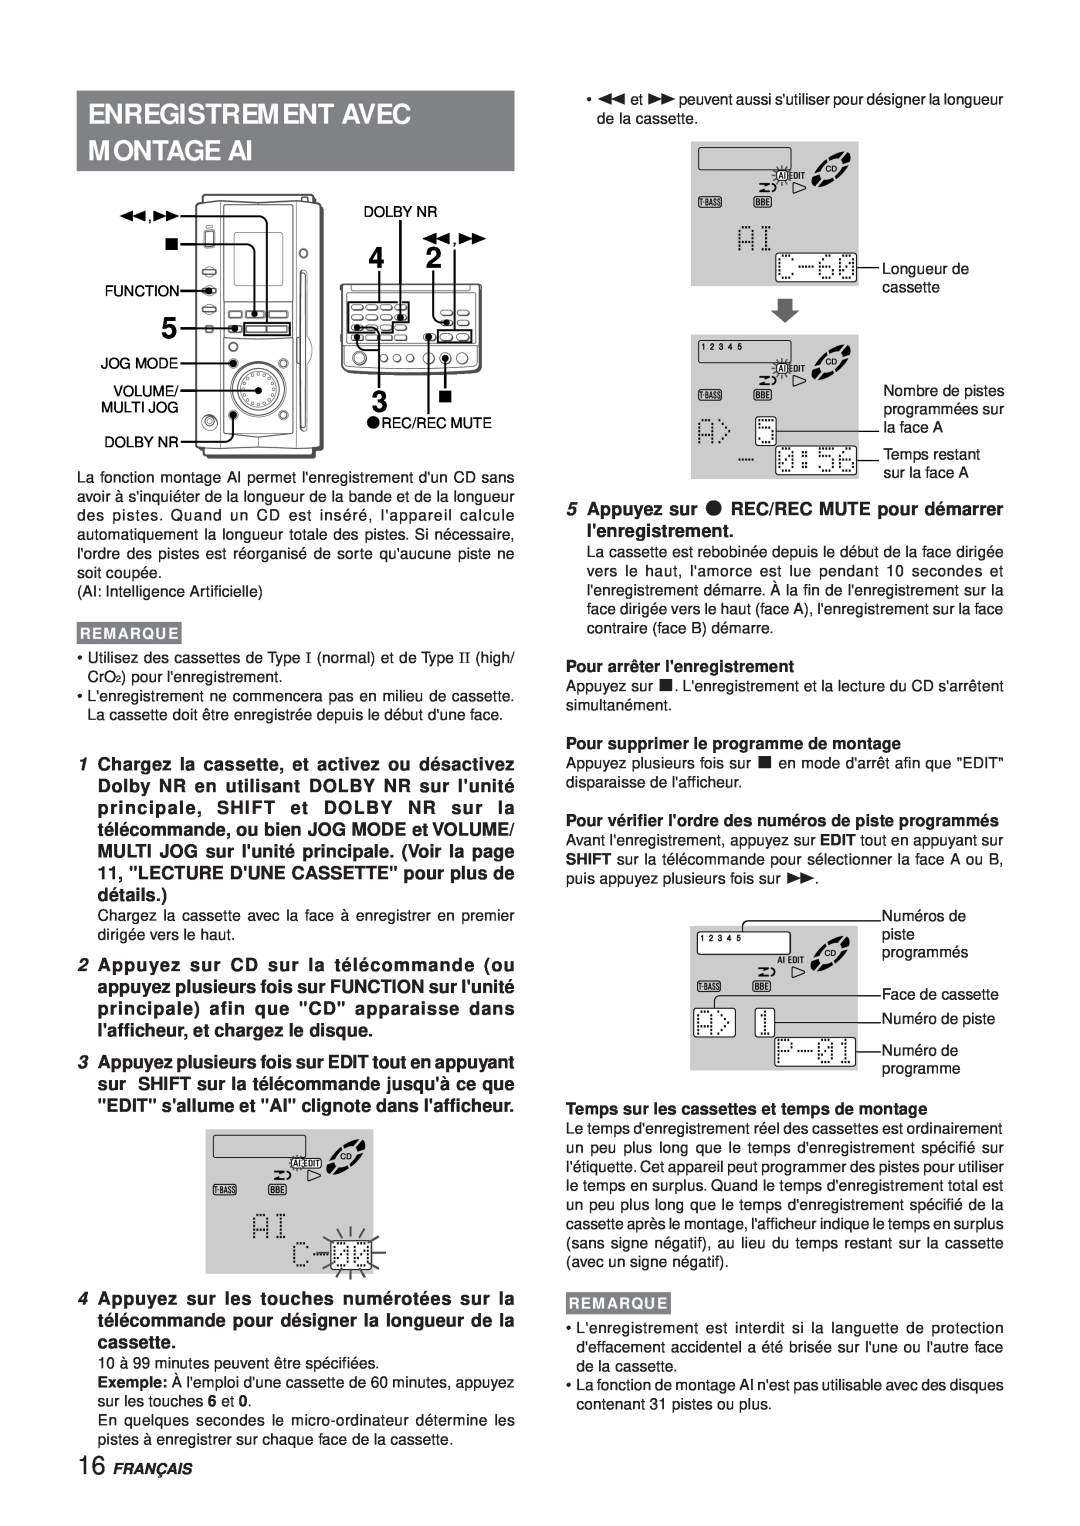 Aiwa XR-MS3 manual Enregistrement Avec Montage Ai, détails, Appuyez sur w REC/REC MUTE pour démarrer lenregistrement 